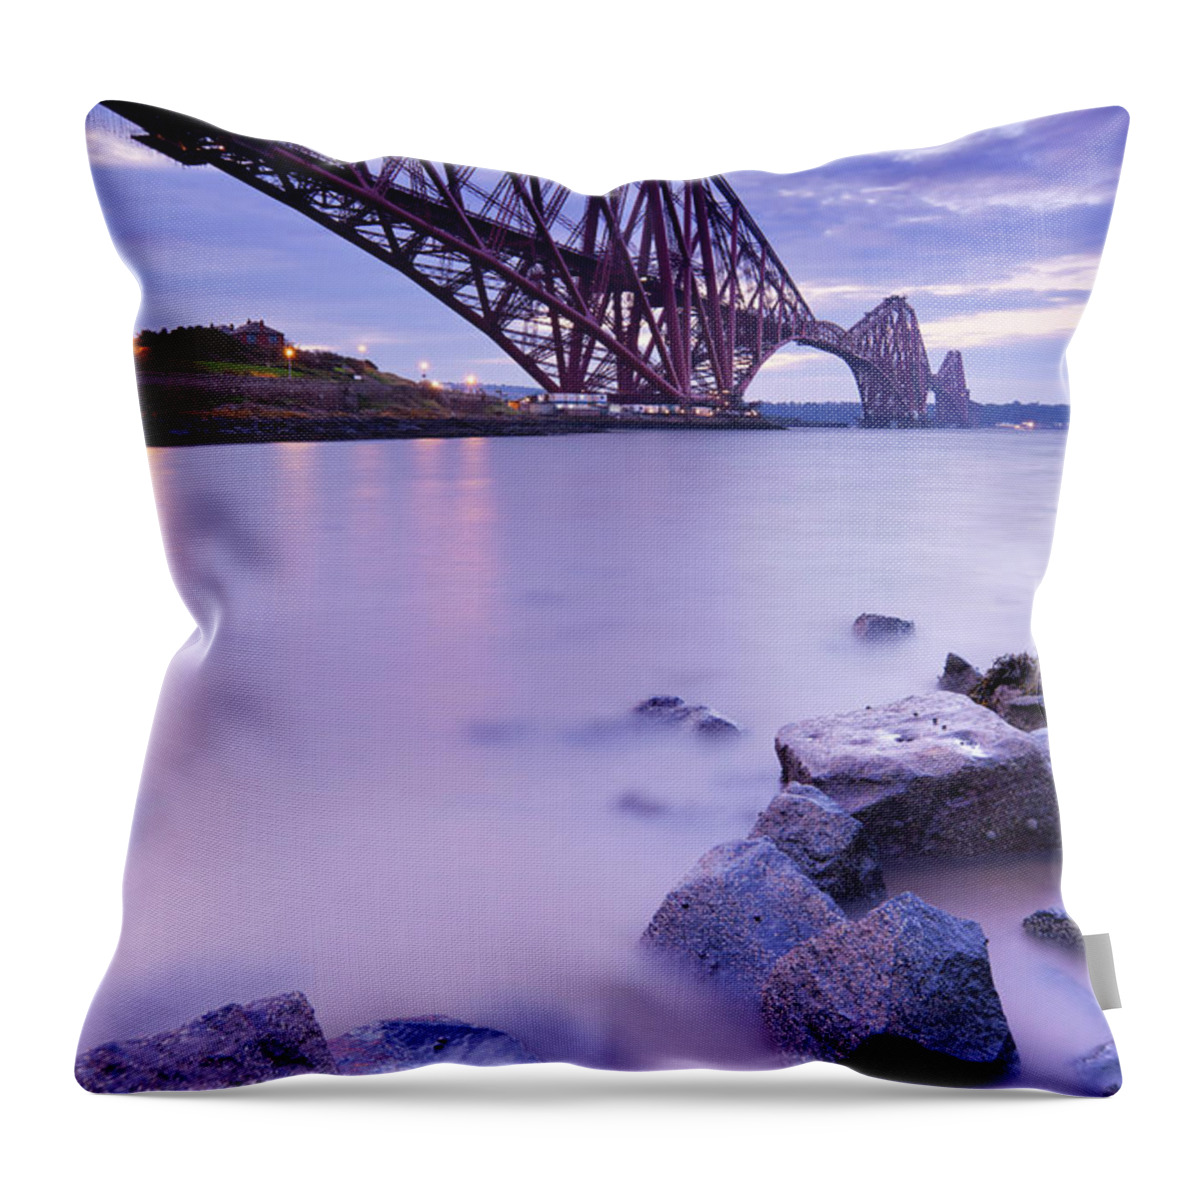 Water's Edge Throw Pillow featuring the photograph The Forth Rail Bridge Near Edinburgh #1 by Sara winter